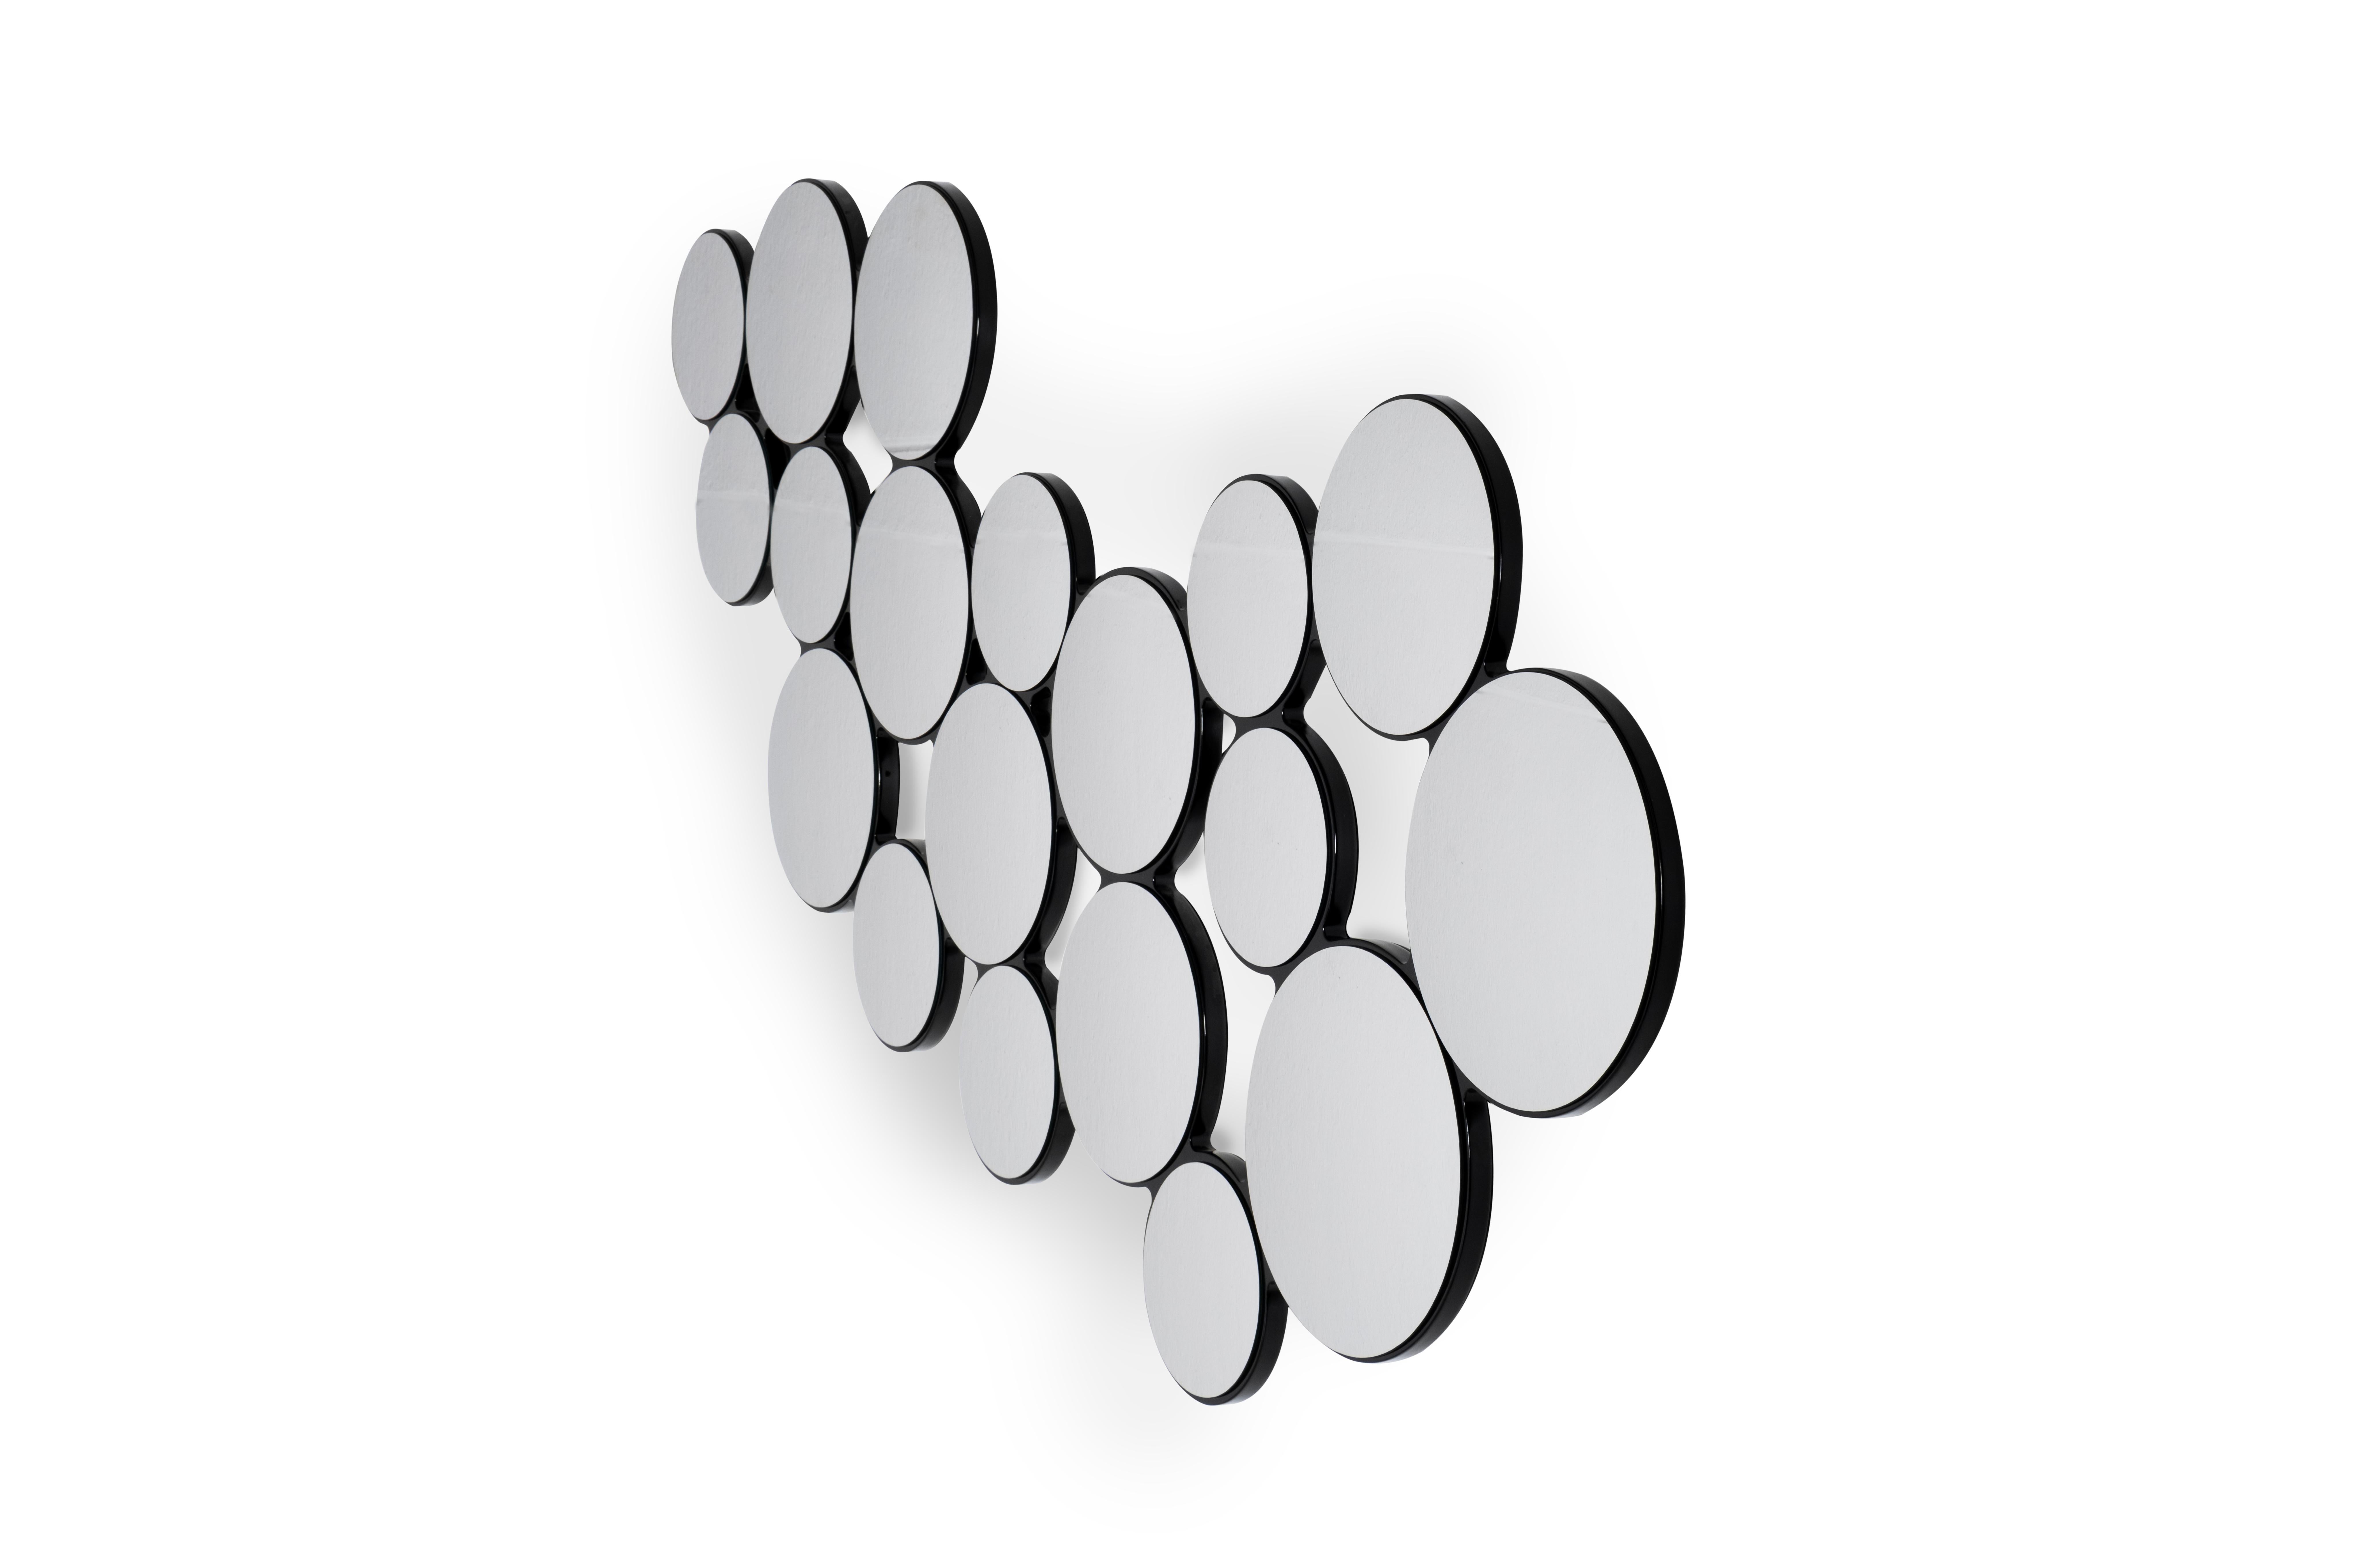 Modern Bubbles 19 Wall Mirror, Contemporary Collection, Handcrafted in Portugal - Europe by Greenapple.

Un superbe miroir mural décoratif avec une base en bois, laqué en noir brillant, combiné avec 19 miroirs ronds convexes transparents. On a